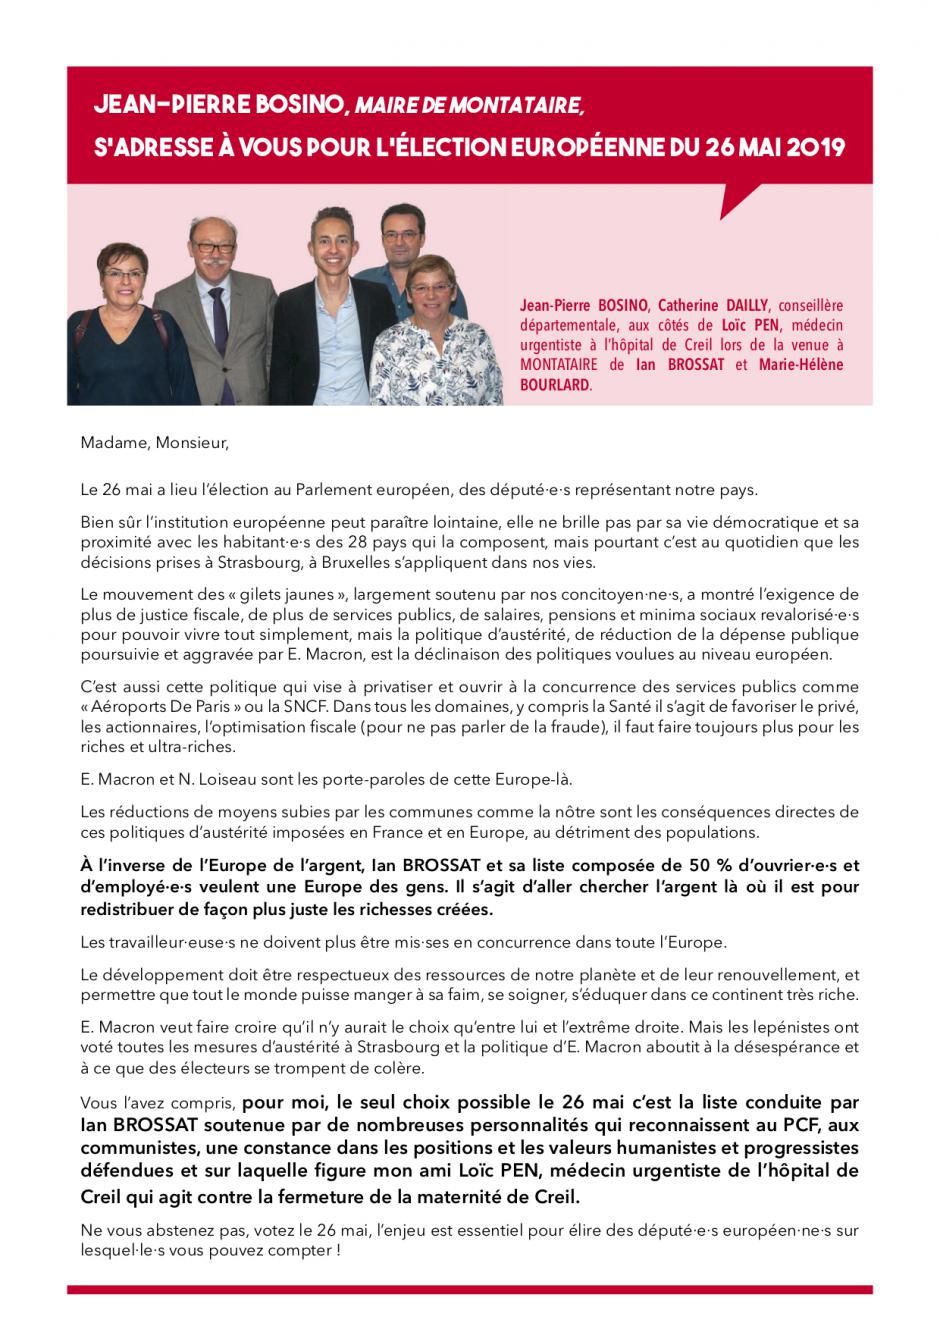 Appel à voter de Jean-Pierre Bosino, maire de Montataire, pour la liste conduite par Ian Brossat - Élections européennes, 26 mai 2019